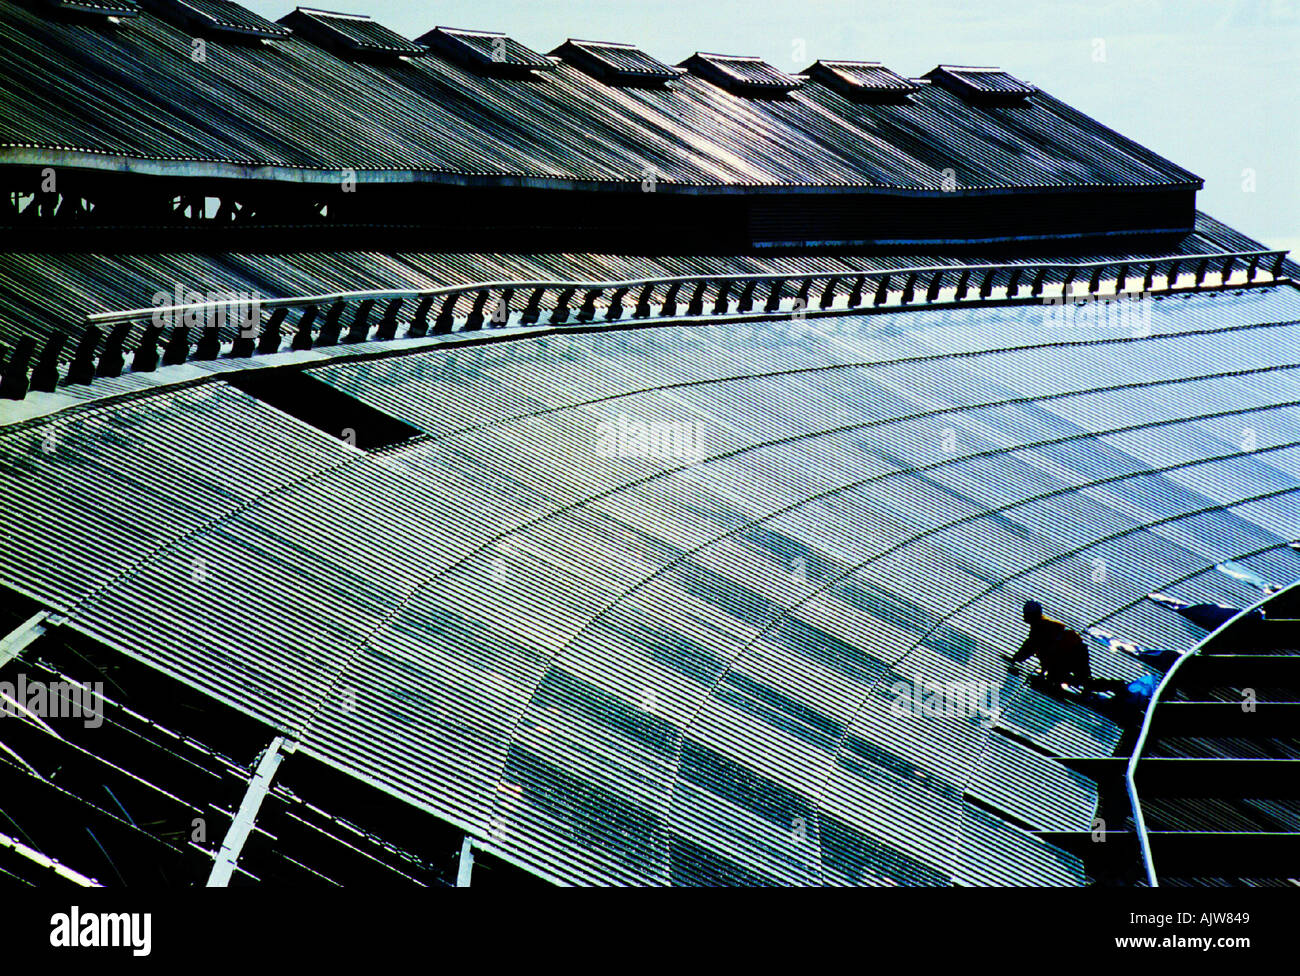 Andy Parkin, ingegnere civile della Kier Rail, ispeziona i 3 ettari di nuovo vetro laminato rinforzato installato sul tetto della stazione di Brighton, classificato come di grado 11. Foto Stock